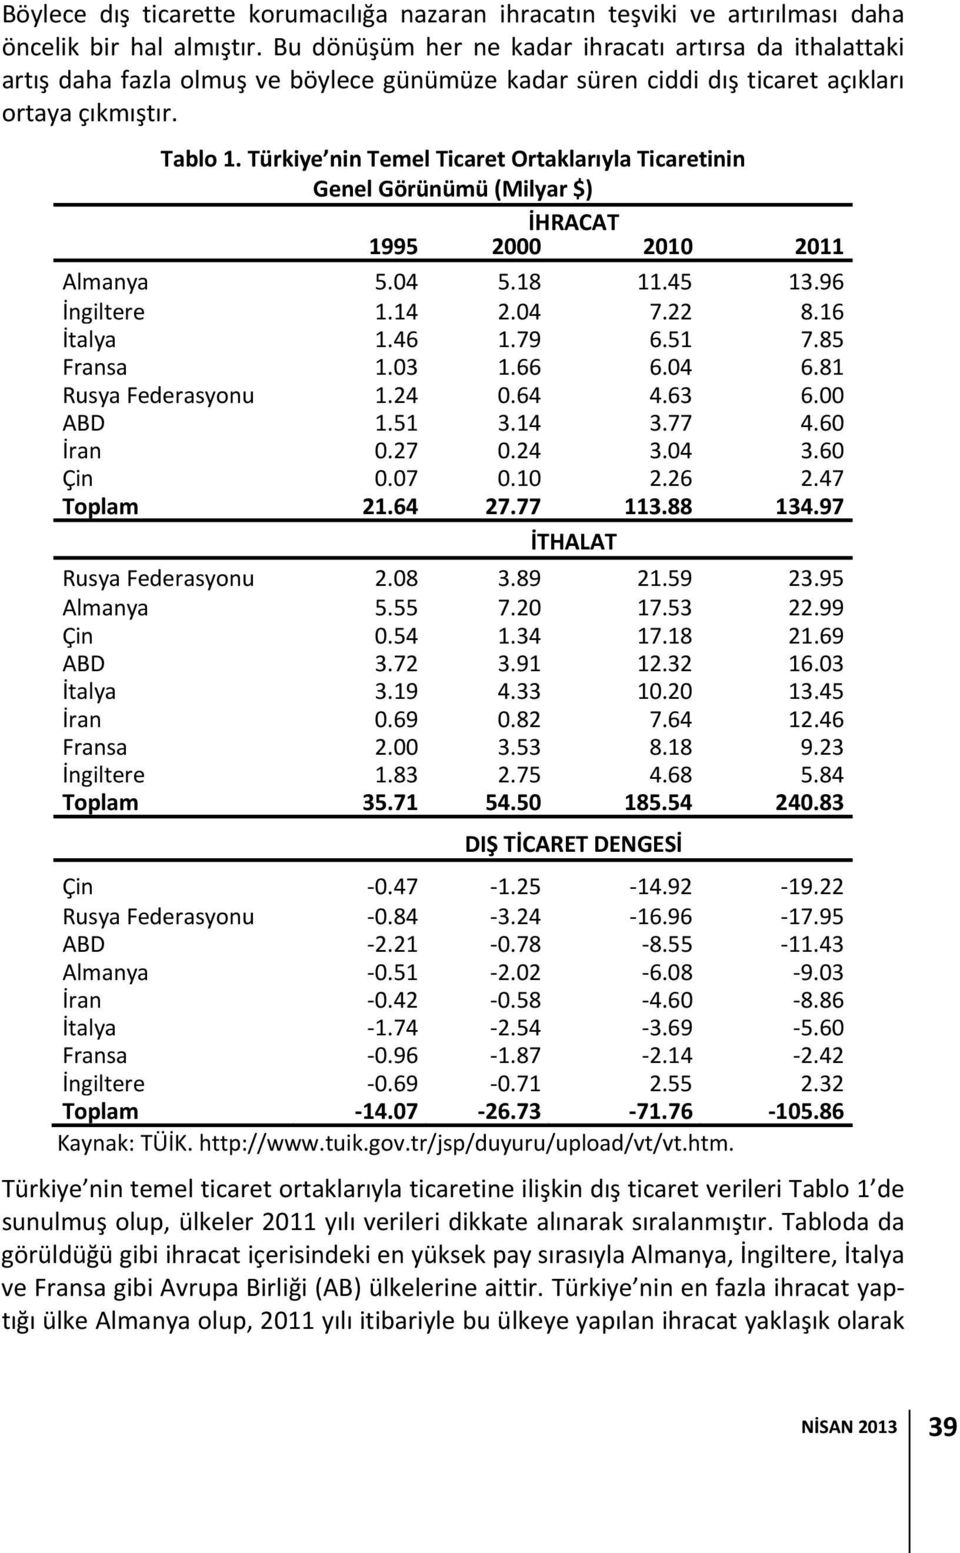 Türkiye nin Temel Ticaret Ortaklarıyla Ticaretinin Genel Görünümü (Milyar $) İHRACAT 1995 2000 2010 2011 Almanya 5.04 5.18 11.45 13.96 İngiltere 1.14 2.04 7.22 8.16 İtalya 1.46 1.79 6.51 7.